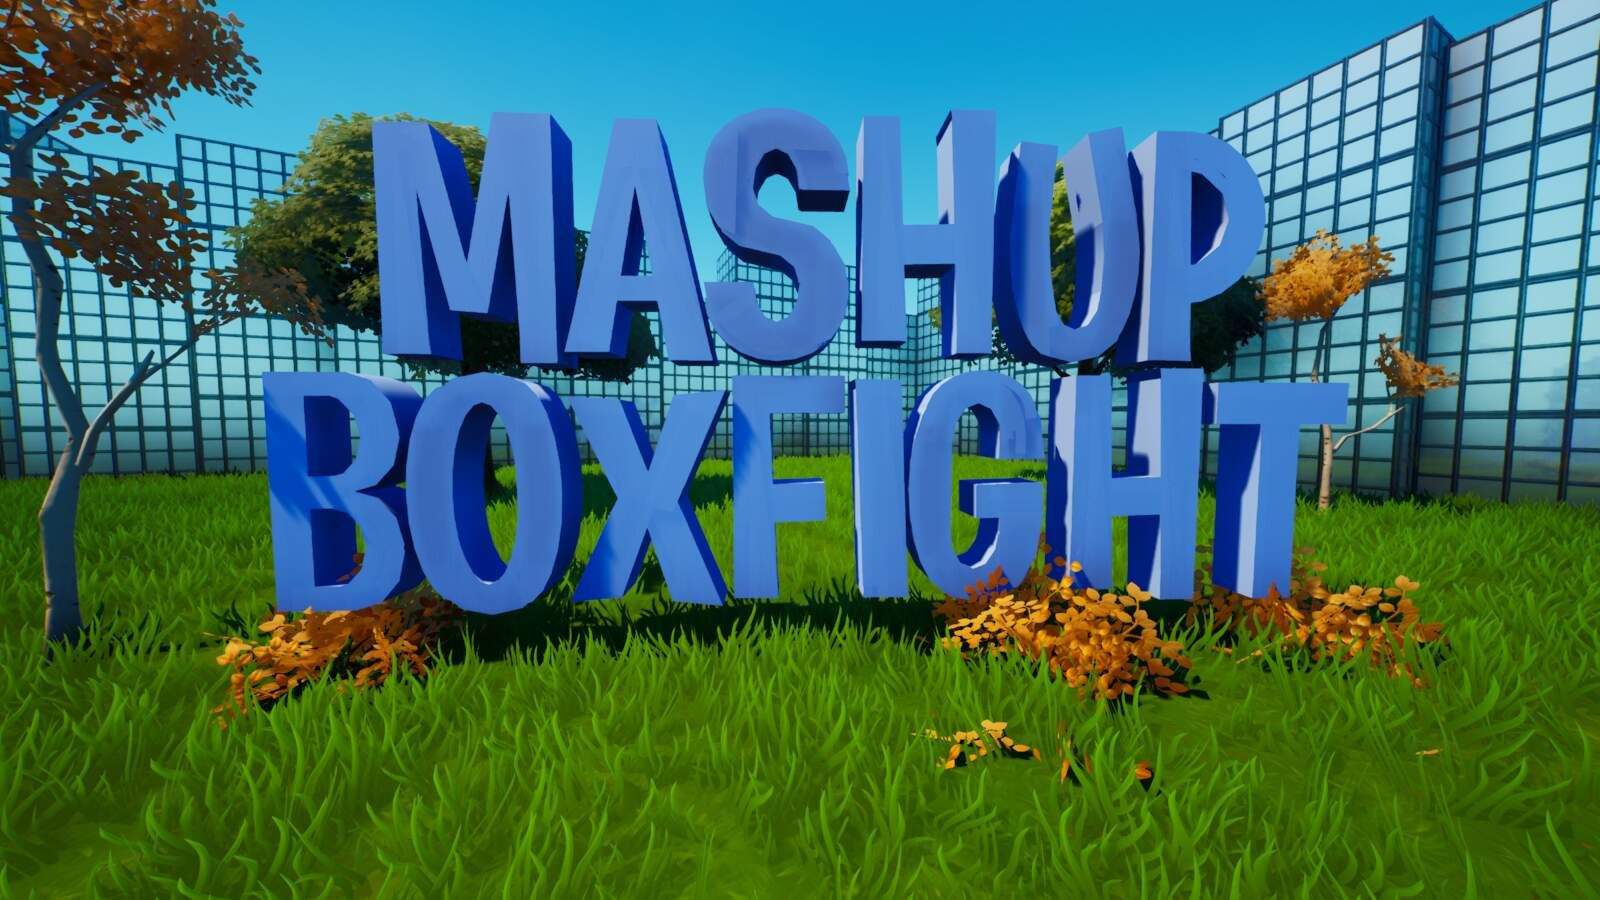 MASHUP BOXFIGHT FFA